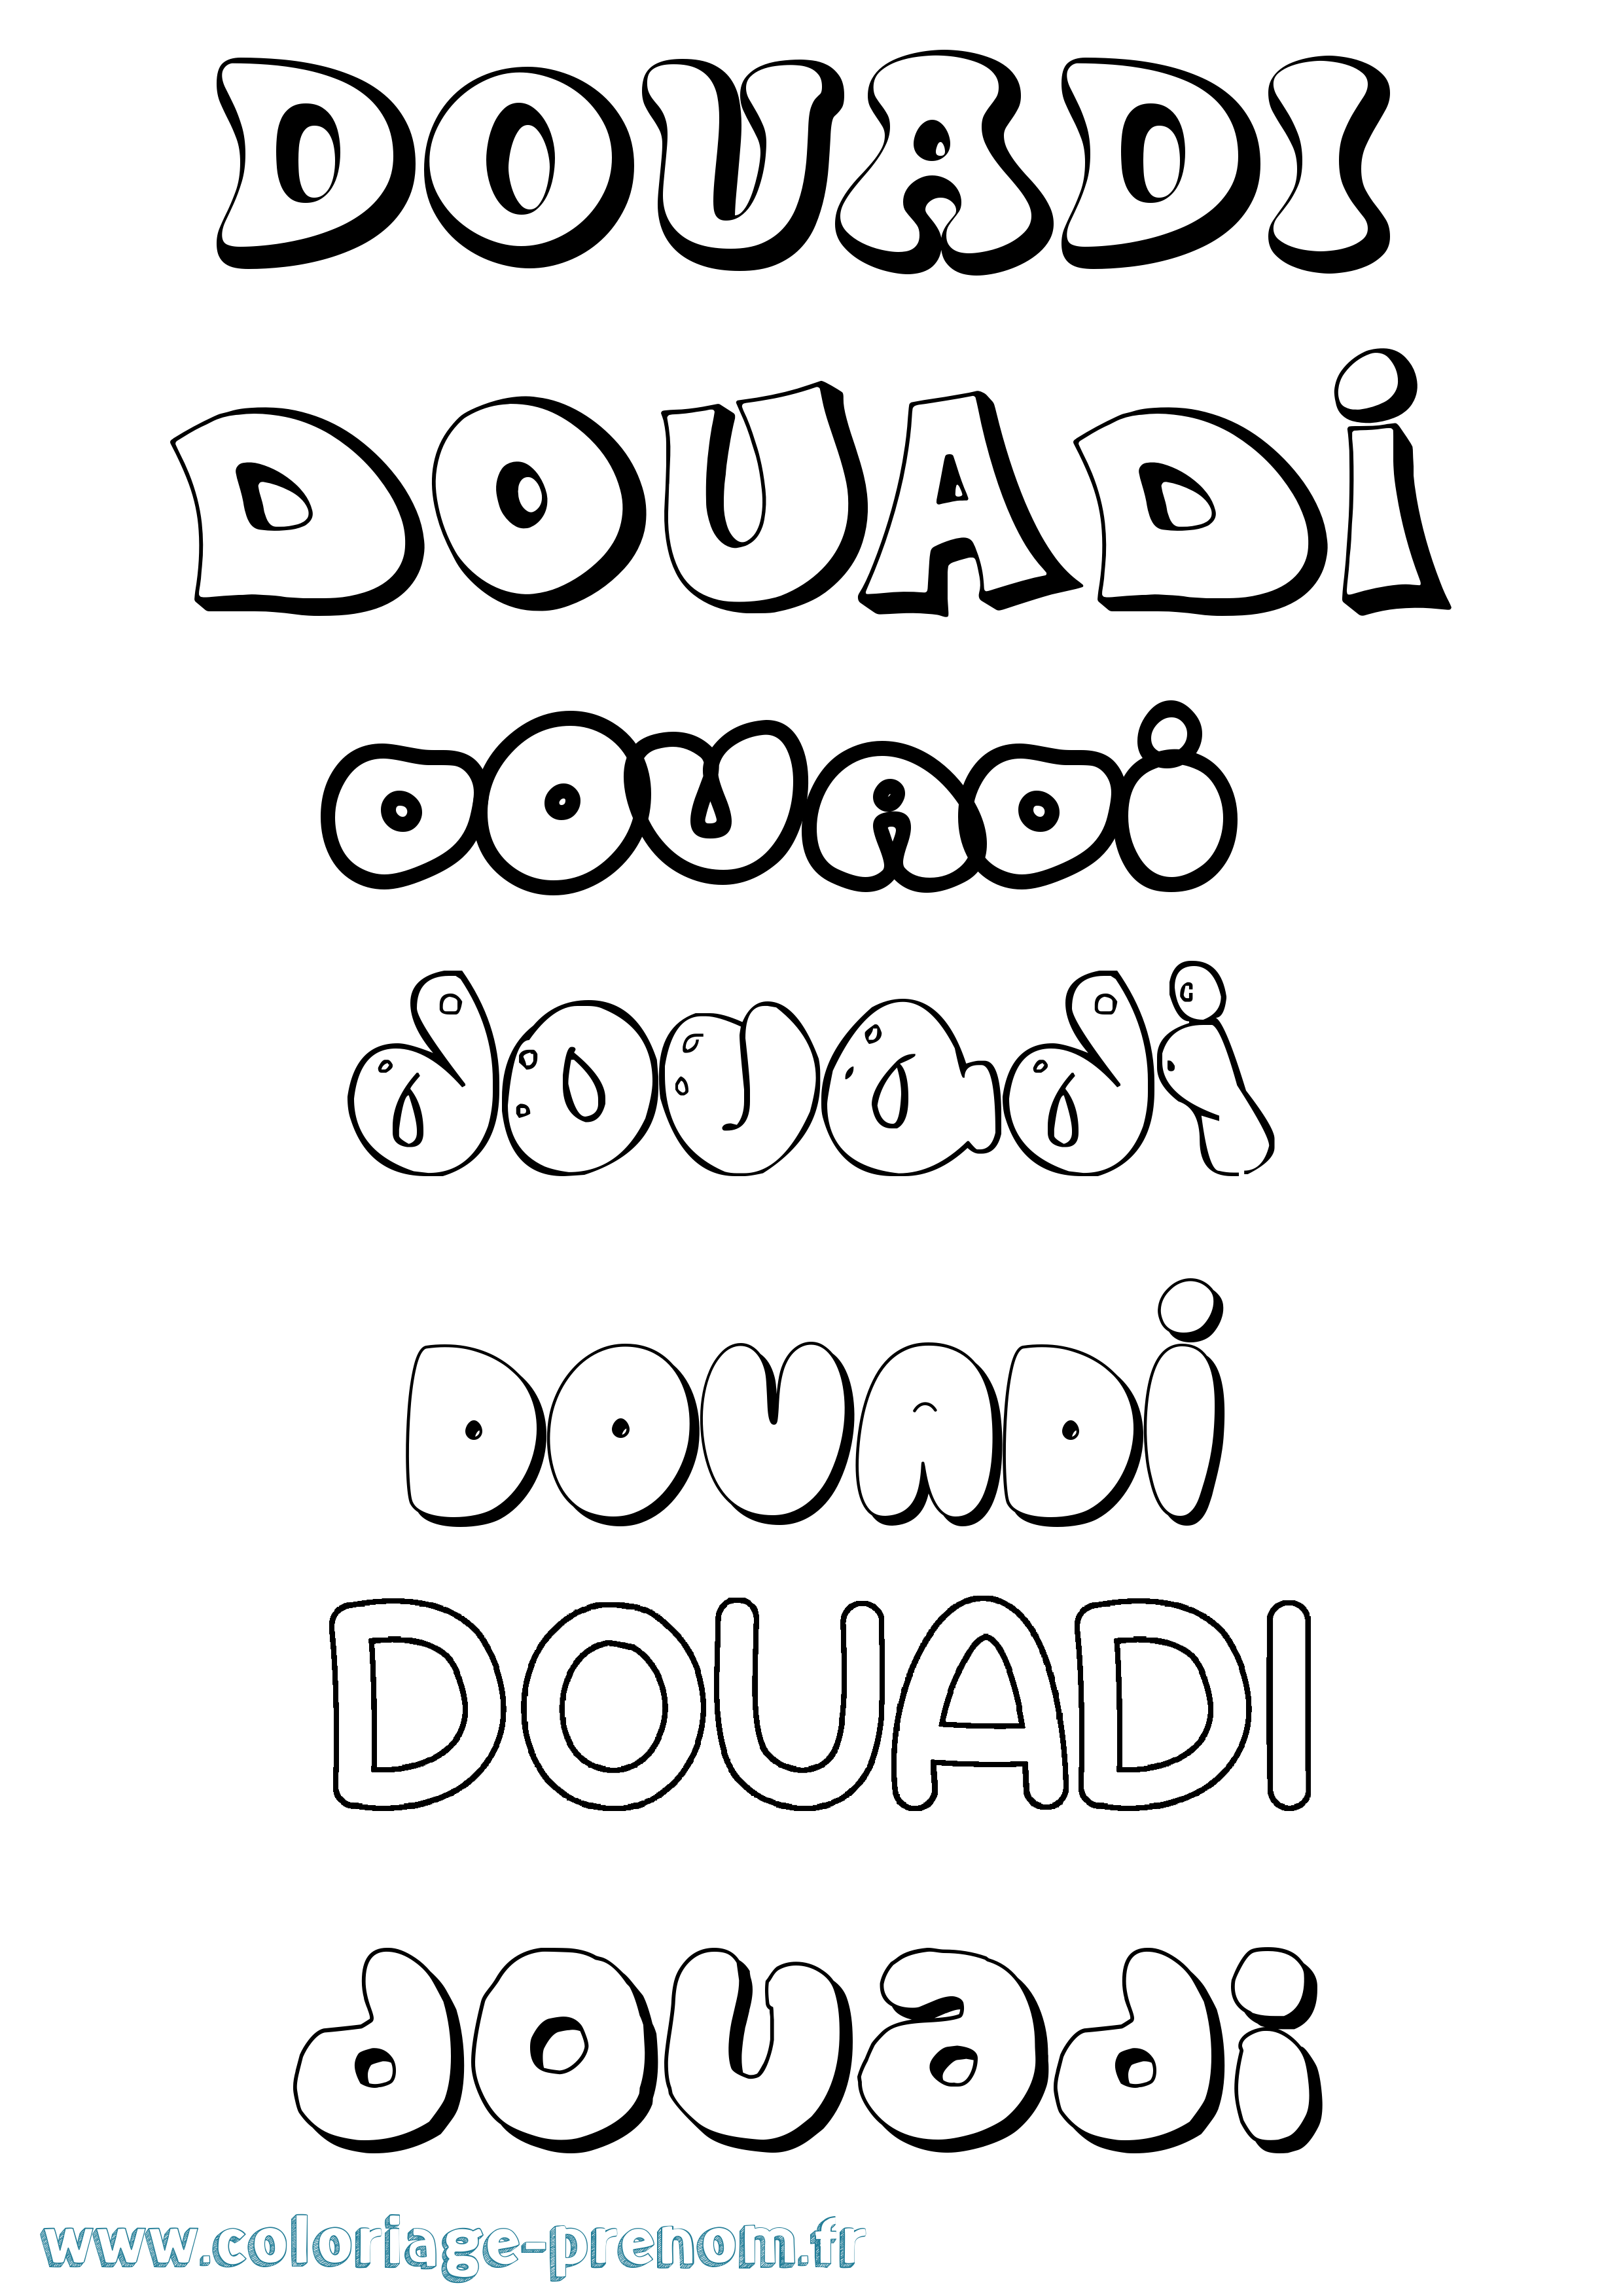 Coloriage prénom Douadi Bubble